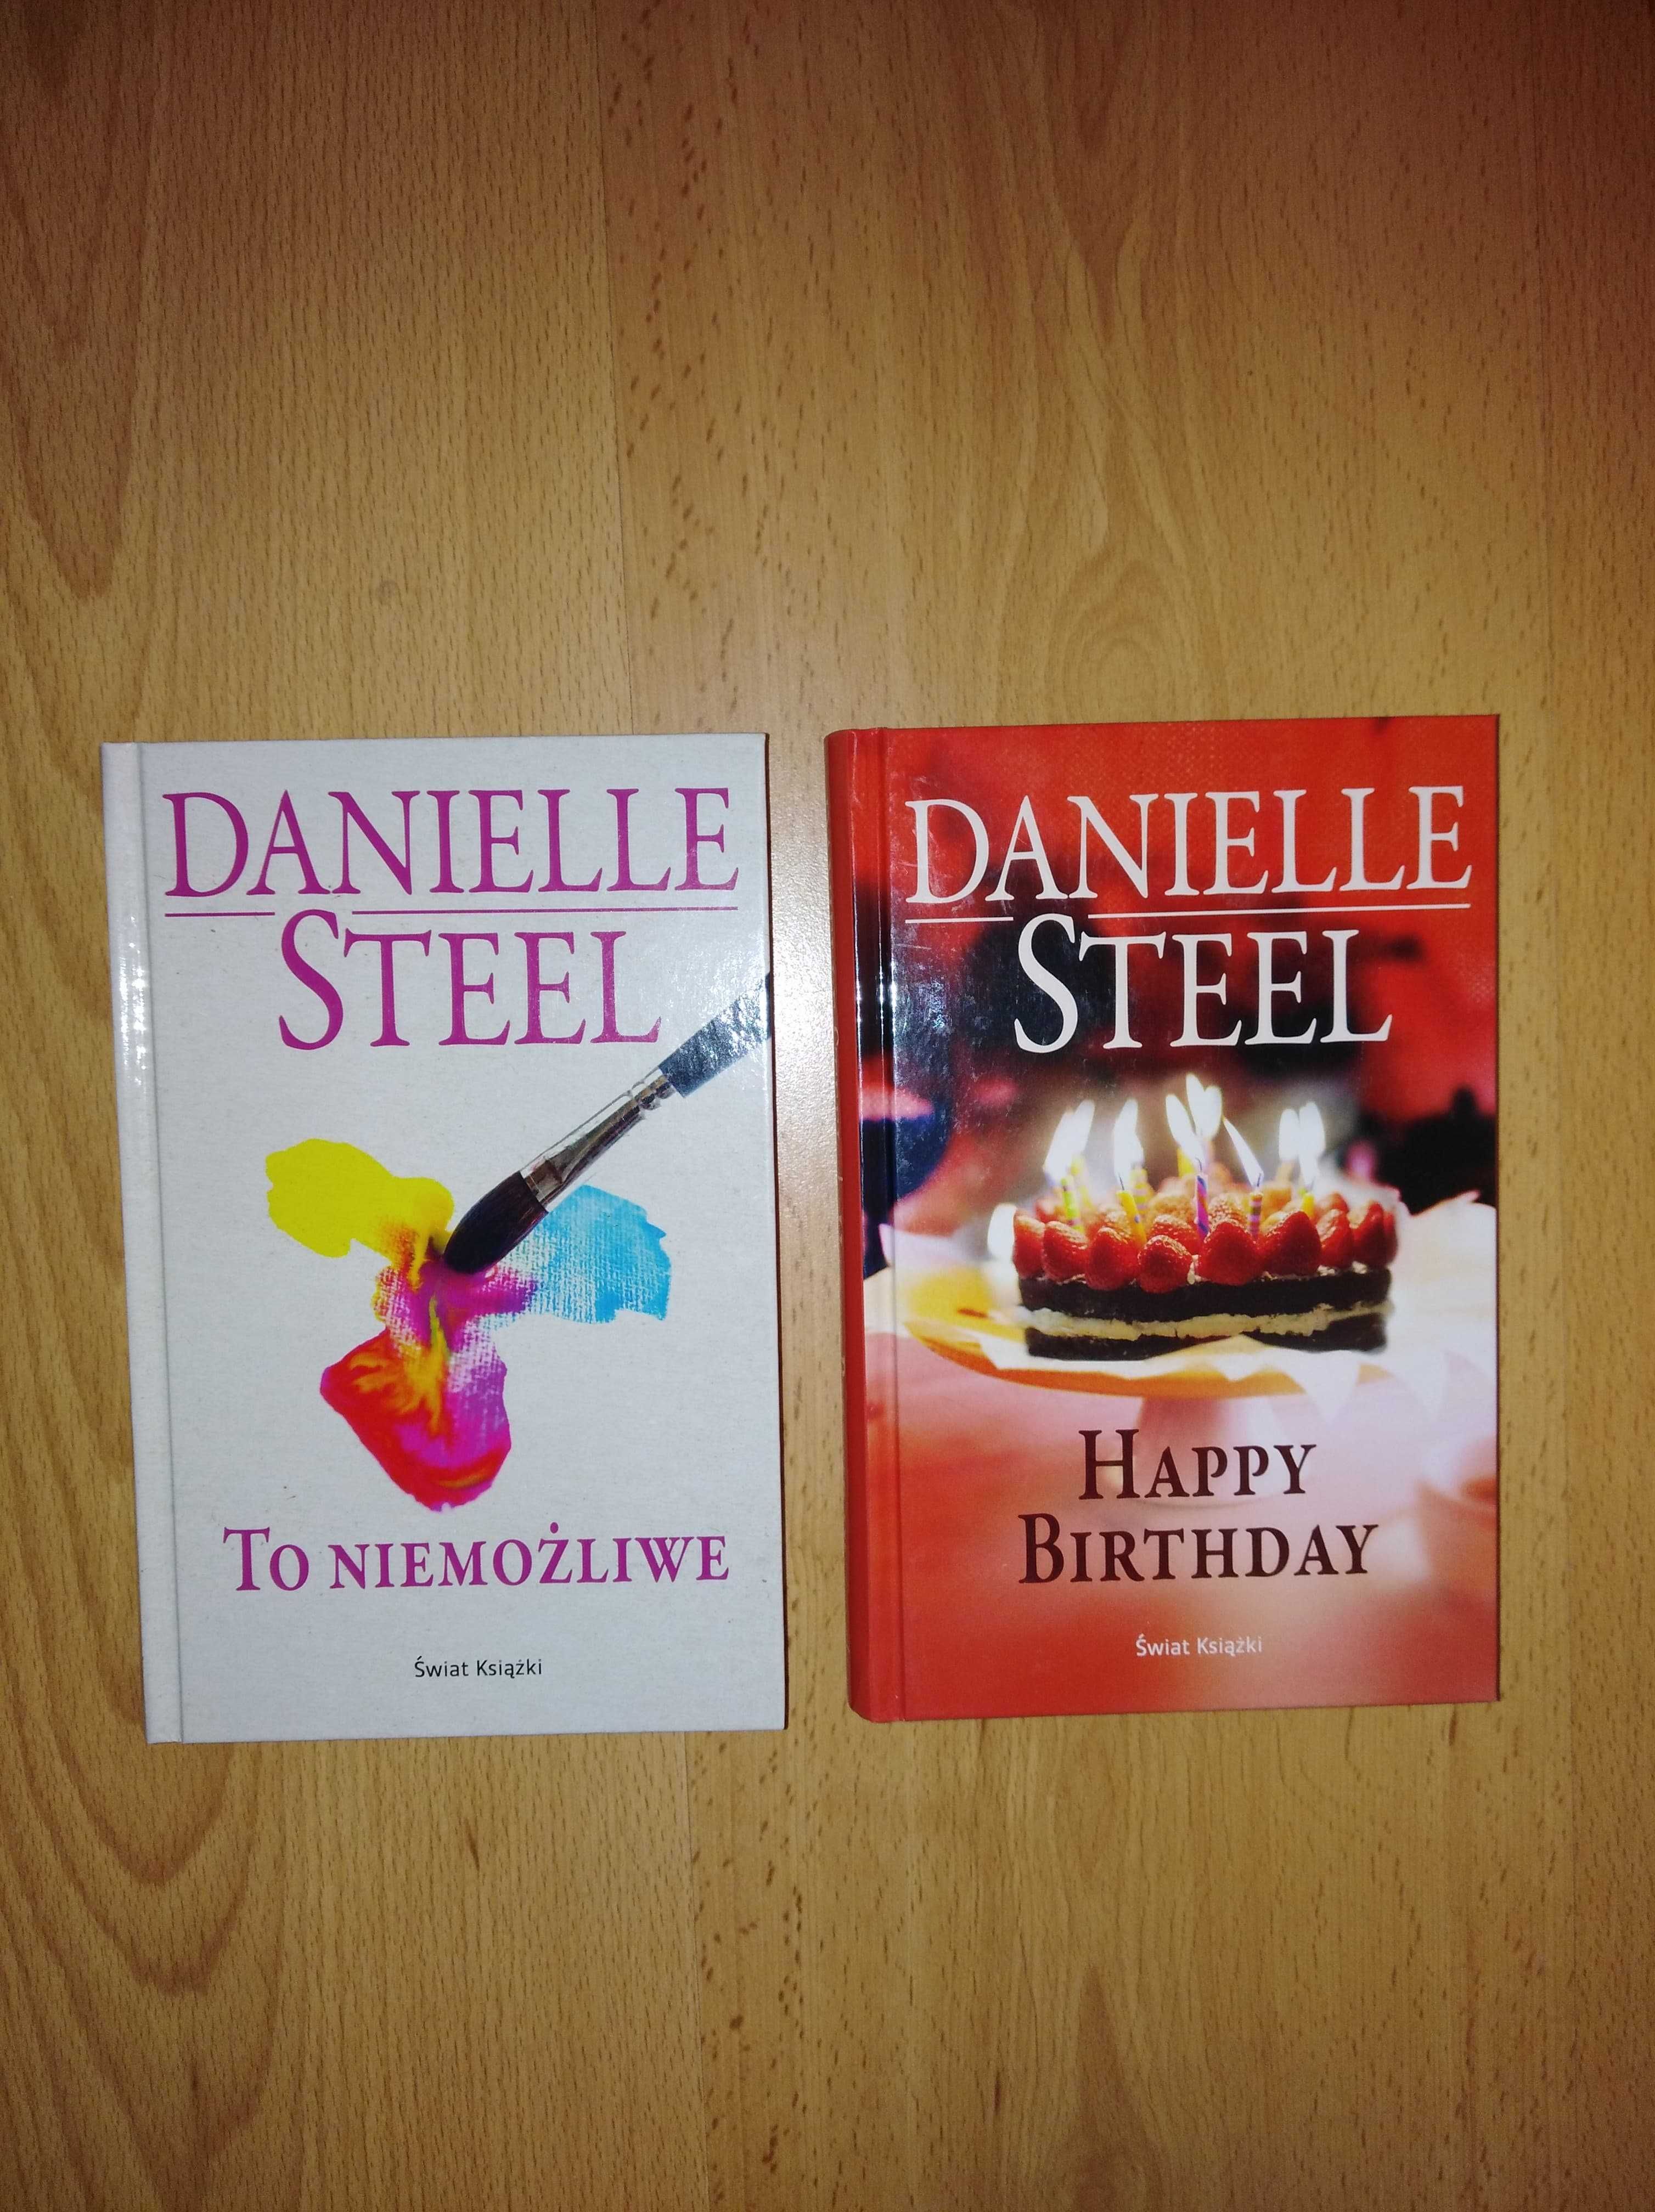 Sprzedam 2 książki - To niemożliwe, Happy birthday -  Danielle Steel